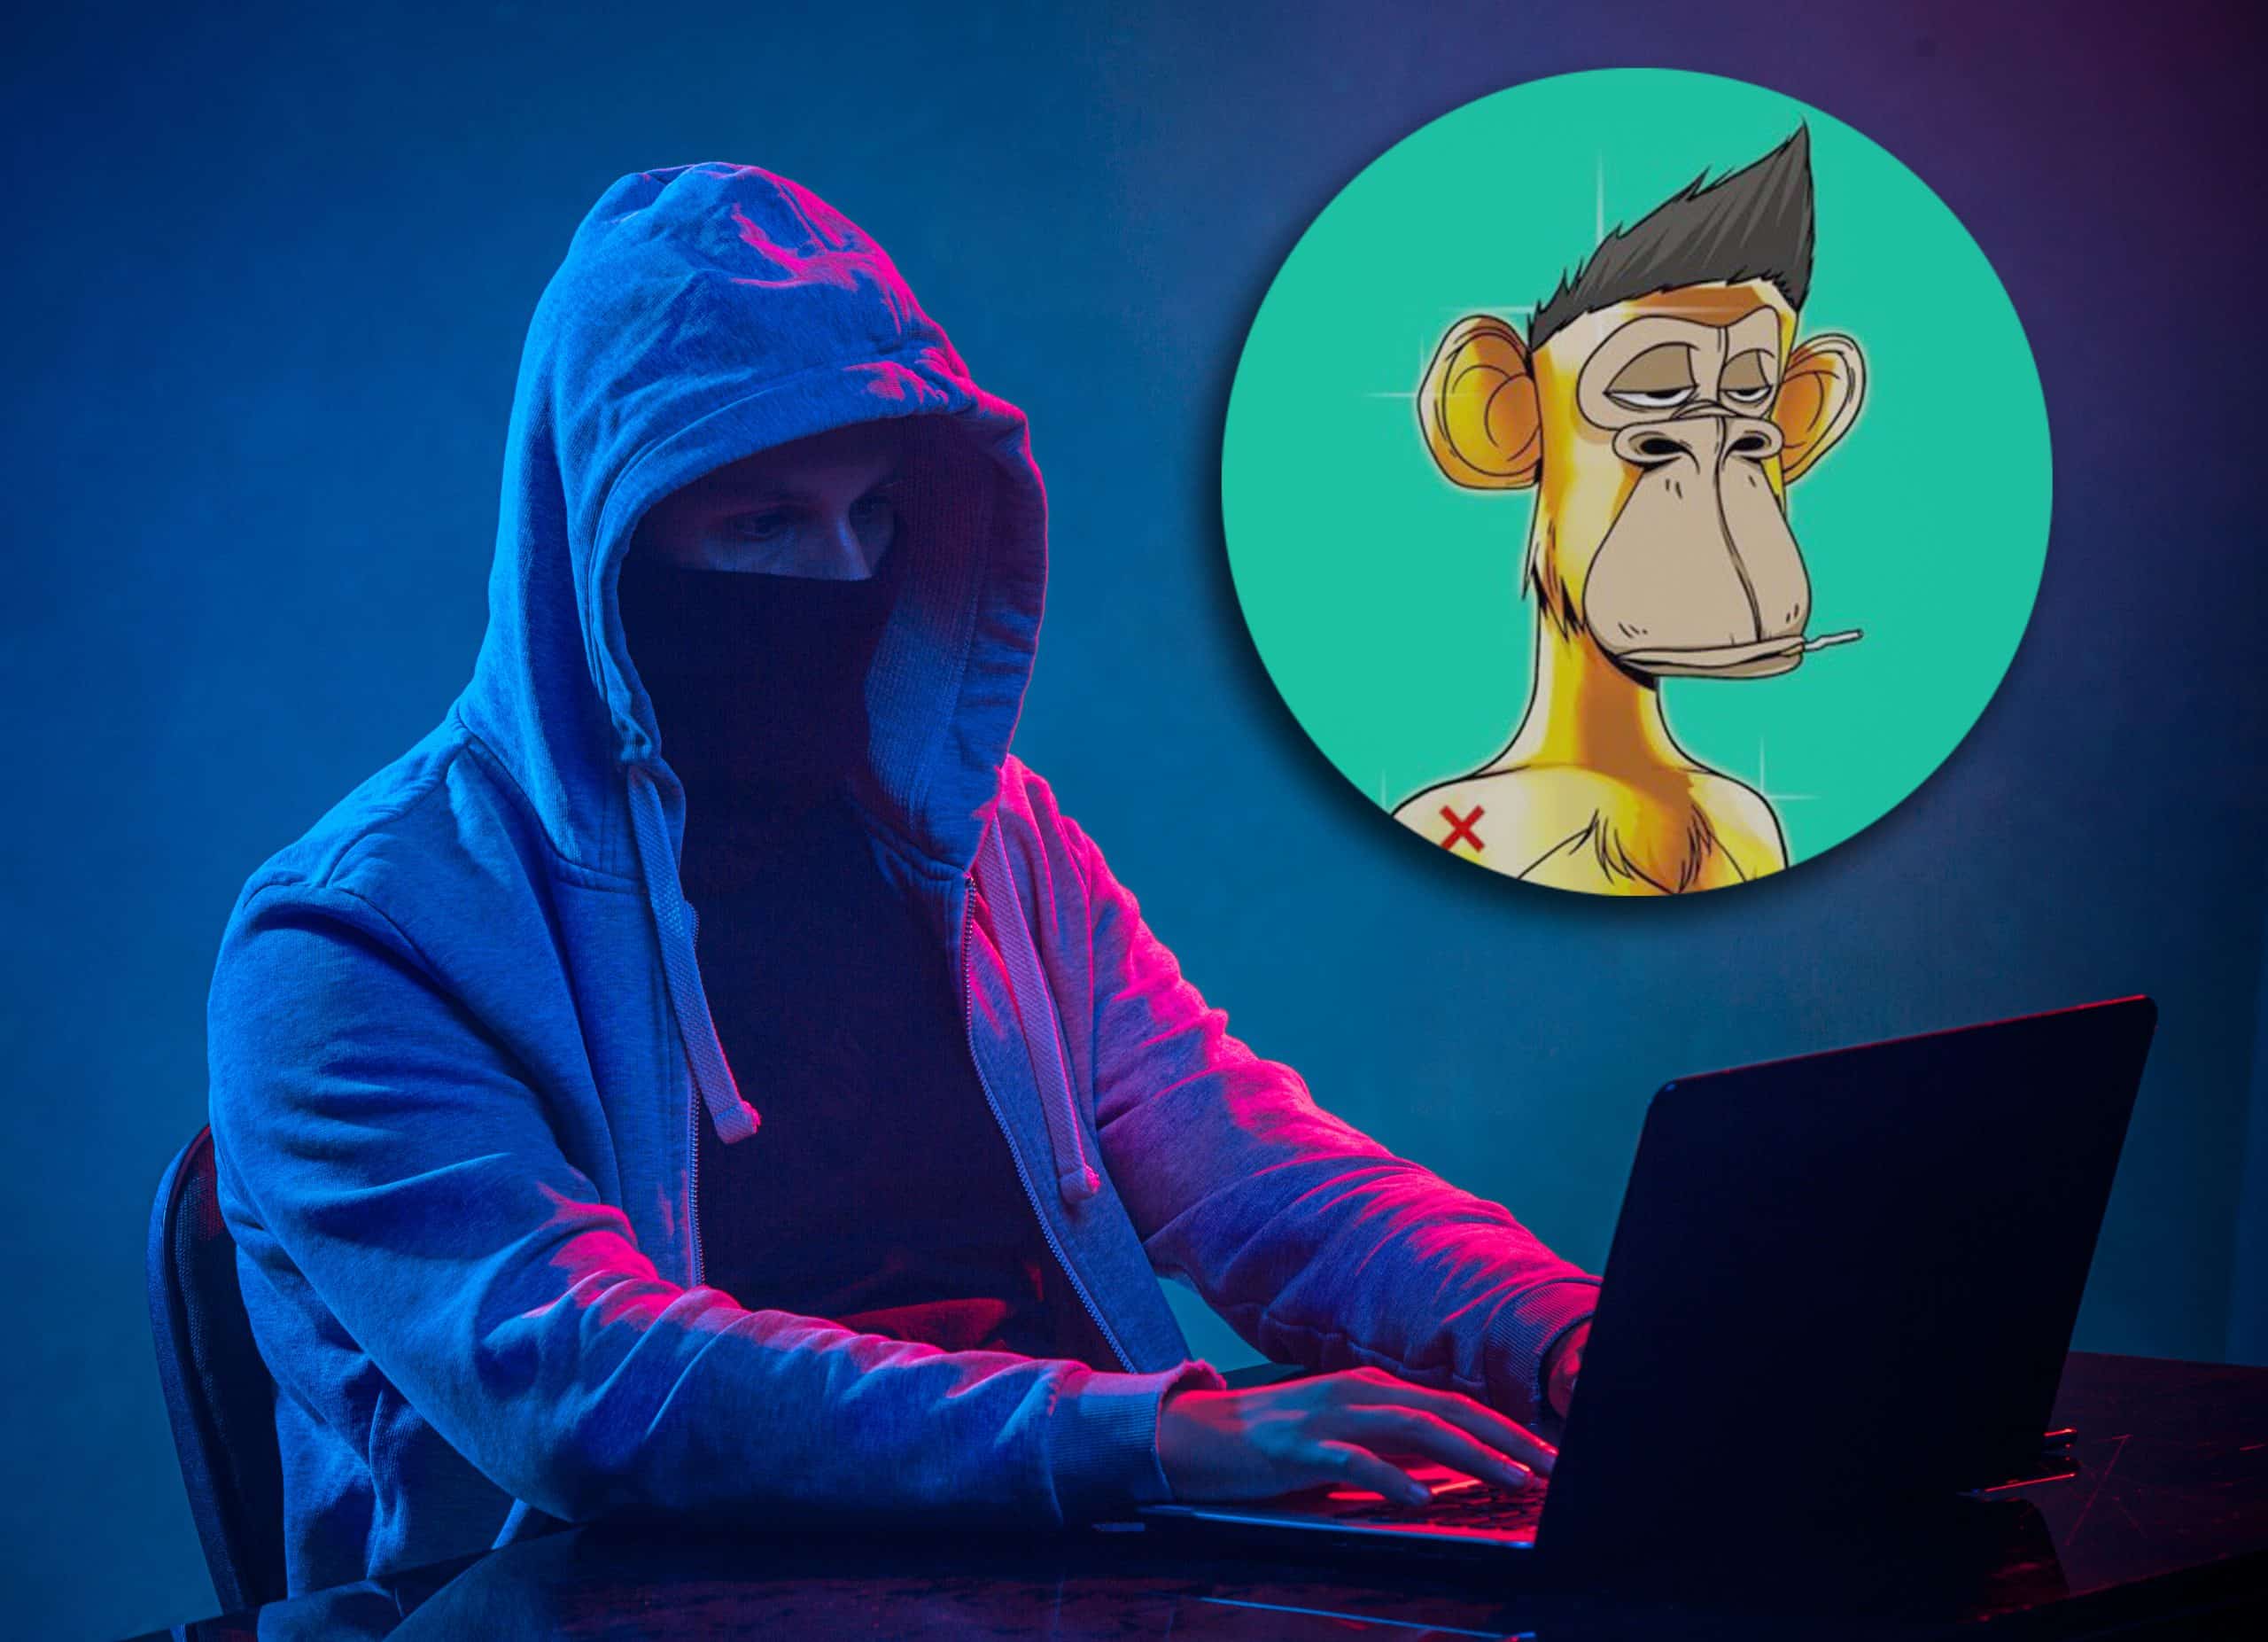 Pirata informático encapuchado robando información con una computadora portátil en el fondo del estudio de color